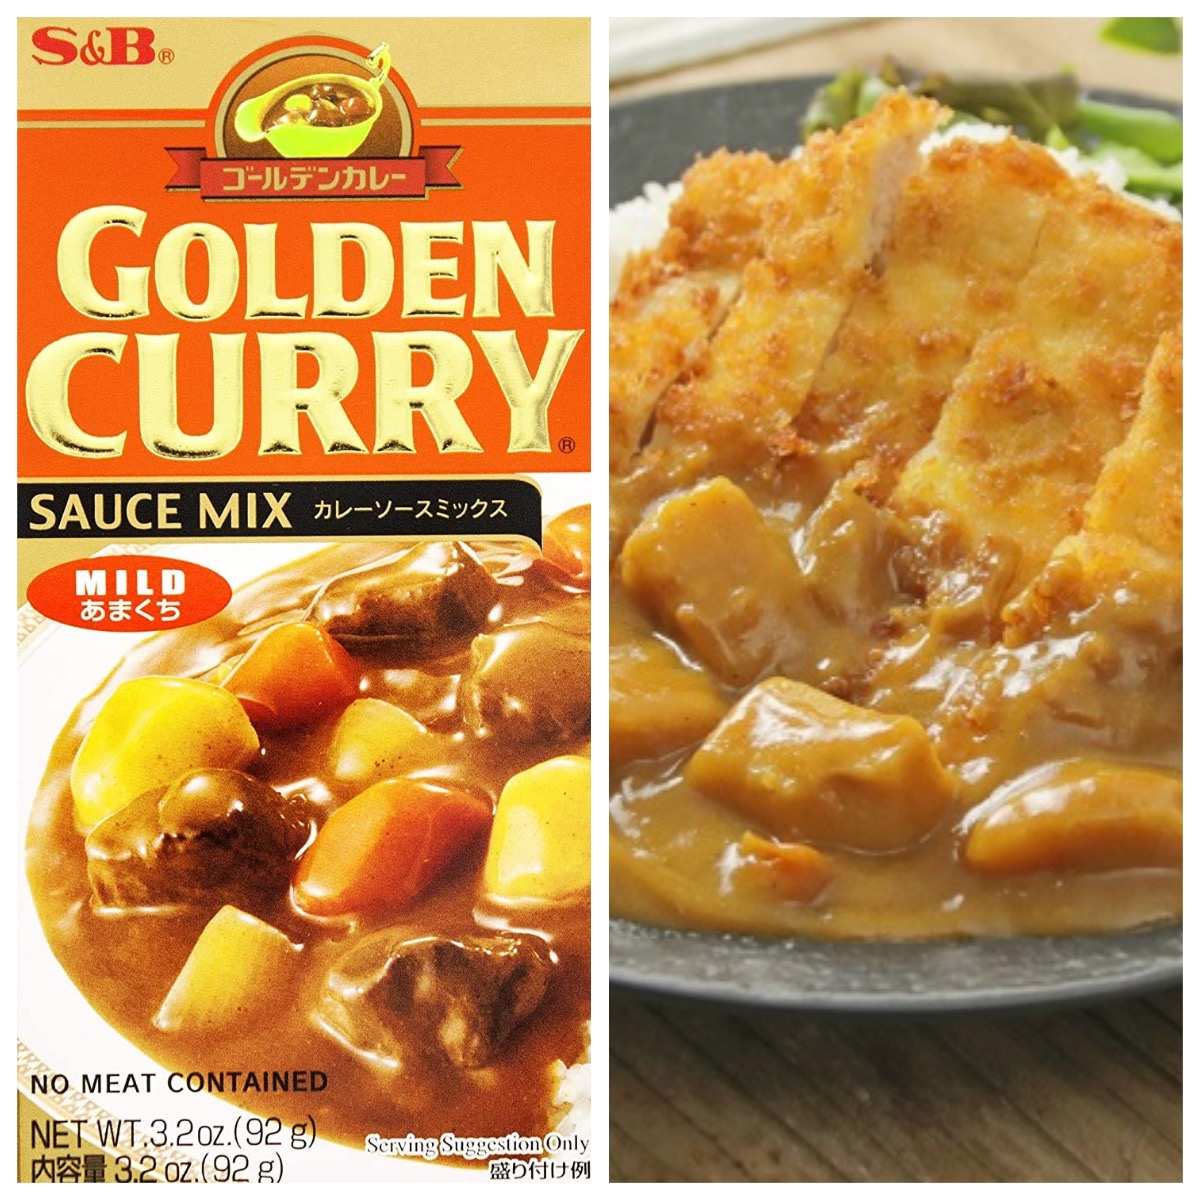 Golden Curry Sauce Mix: Mild